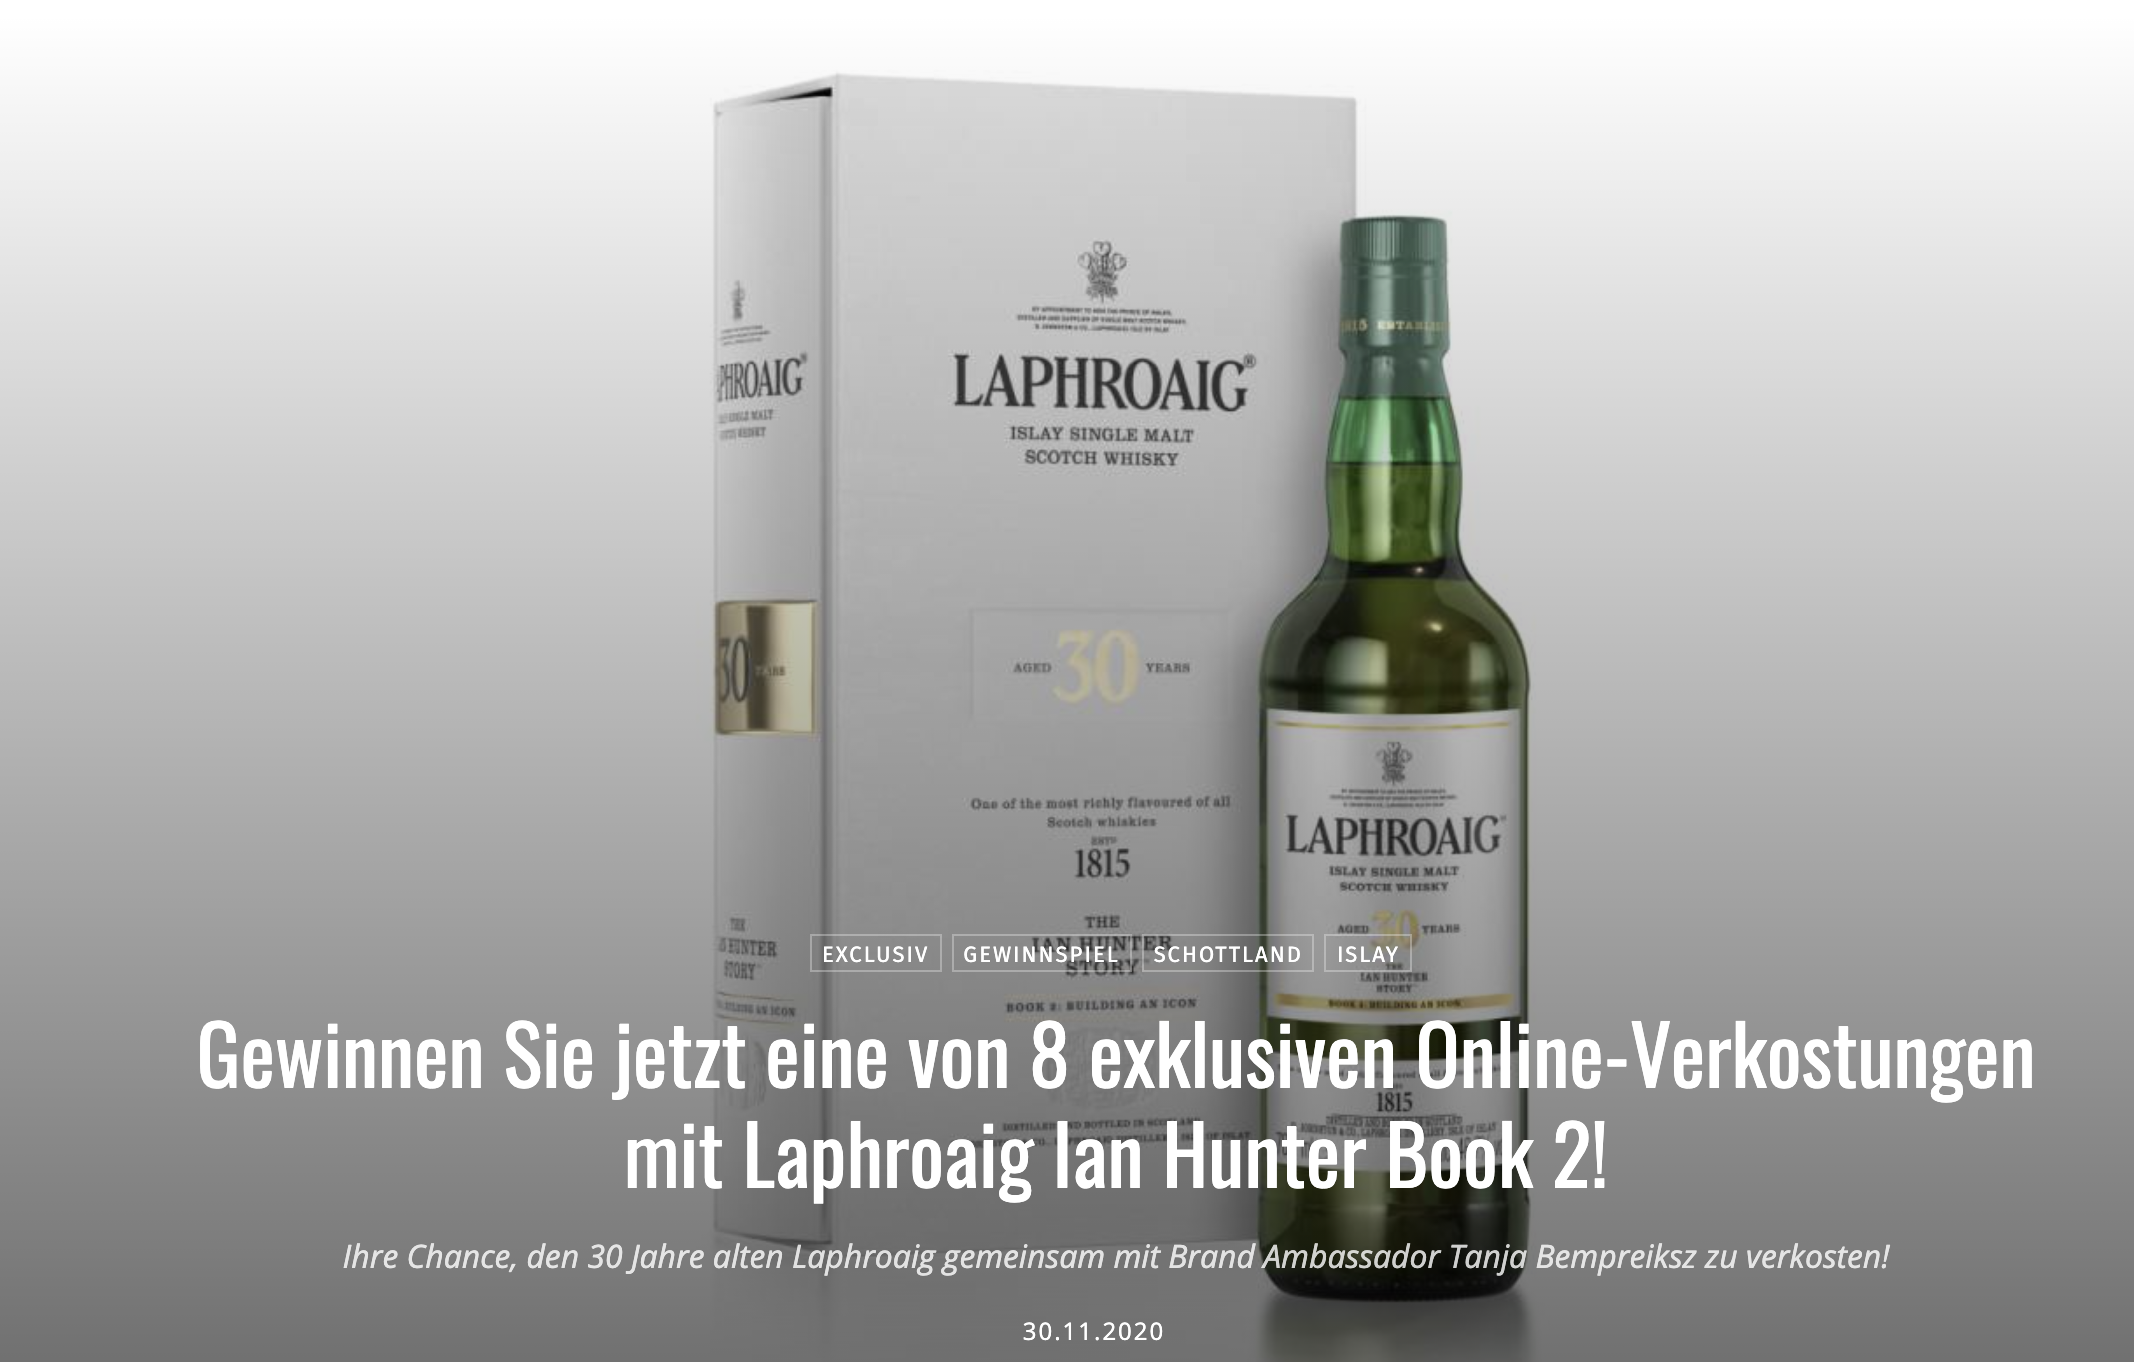 Whisky Experts Gewinnspiel: Laphroaig Paket zu gewinnen